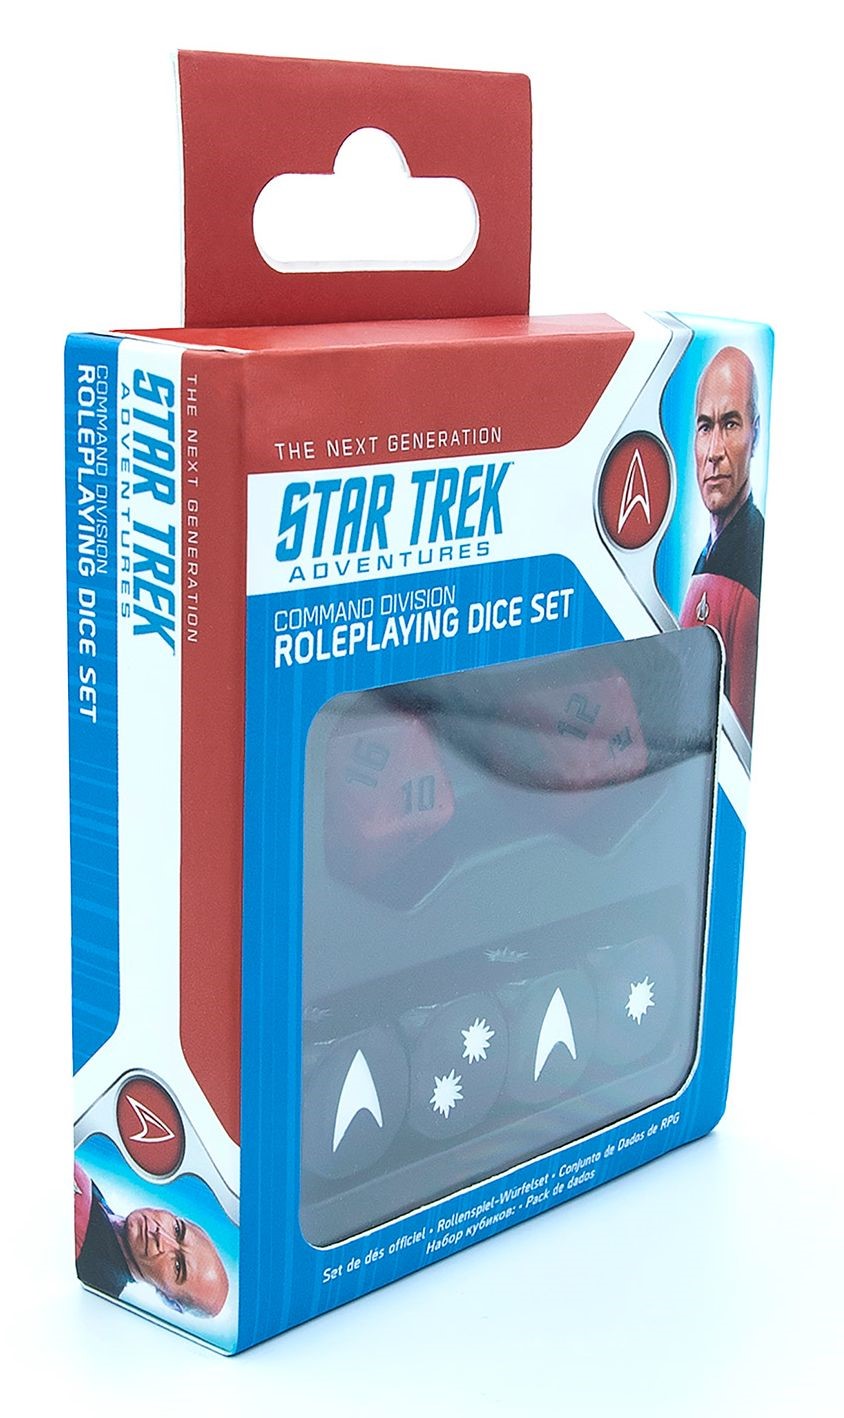 Star Trek Adventures: Dice Set: Command Division Revised 